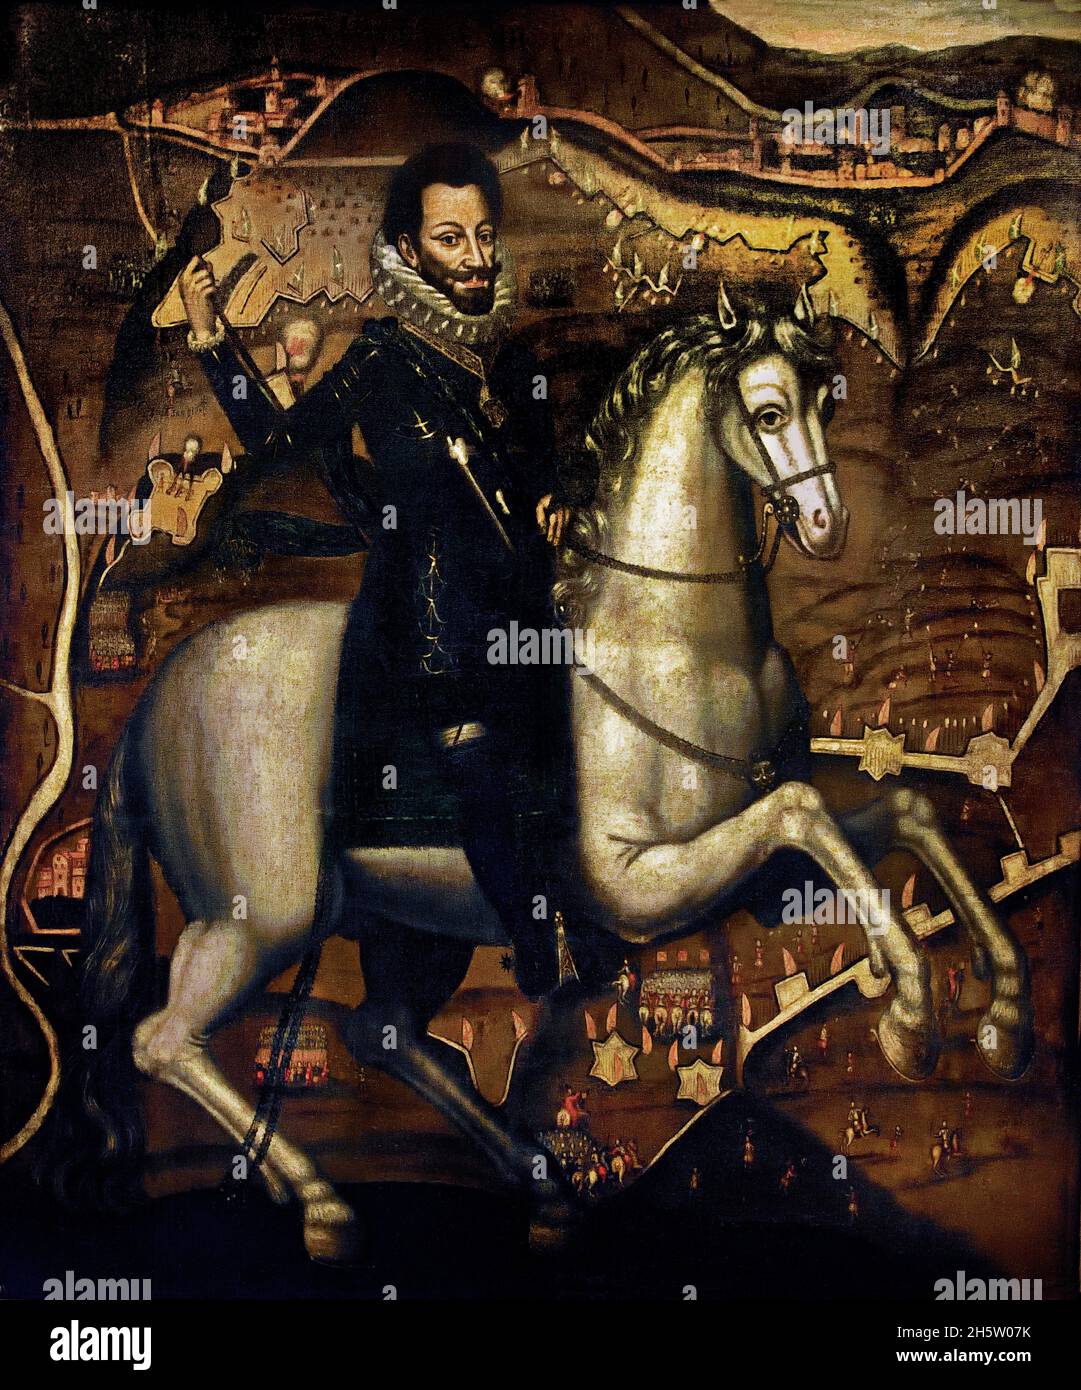 Carlo Emanuele l a Cavallo - Carlo Emanuele l a cavallo 1605 Pittore attivo presso la Corte di Savoia (Carlo Emanuele Duca di Savoia dal 1580 al 1630) nell'appartamento di Madama Felicita. Torino Palazzo reale - Palazzo reale di Torino, Italia, Foto Stock